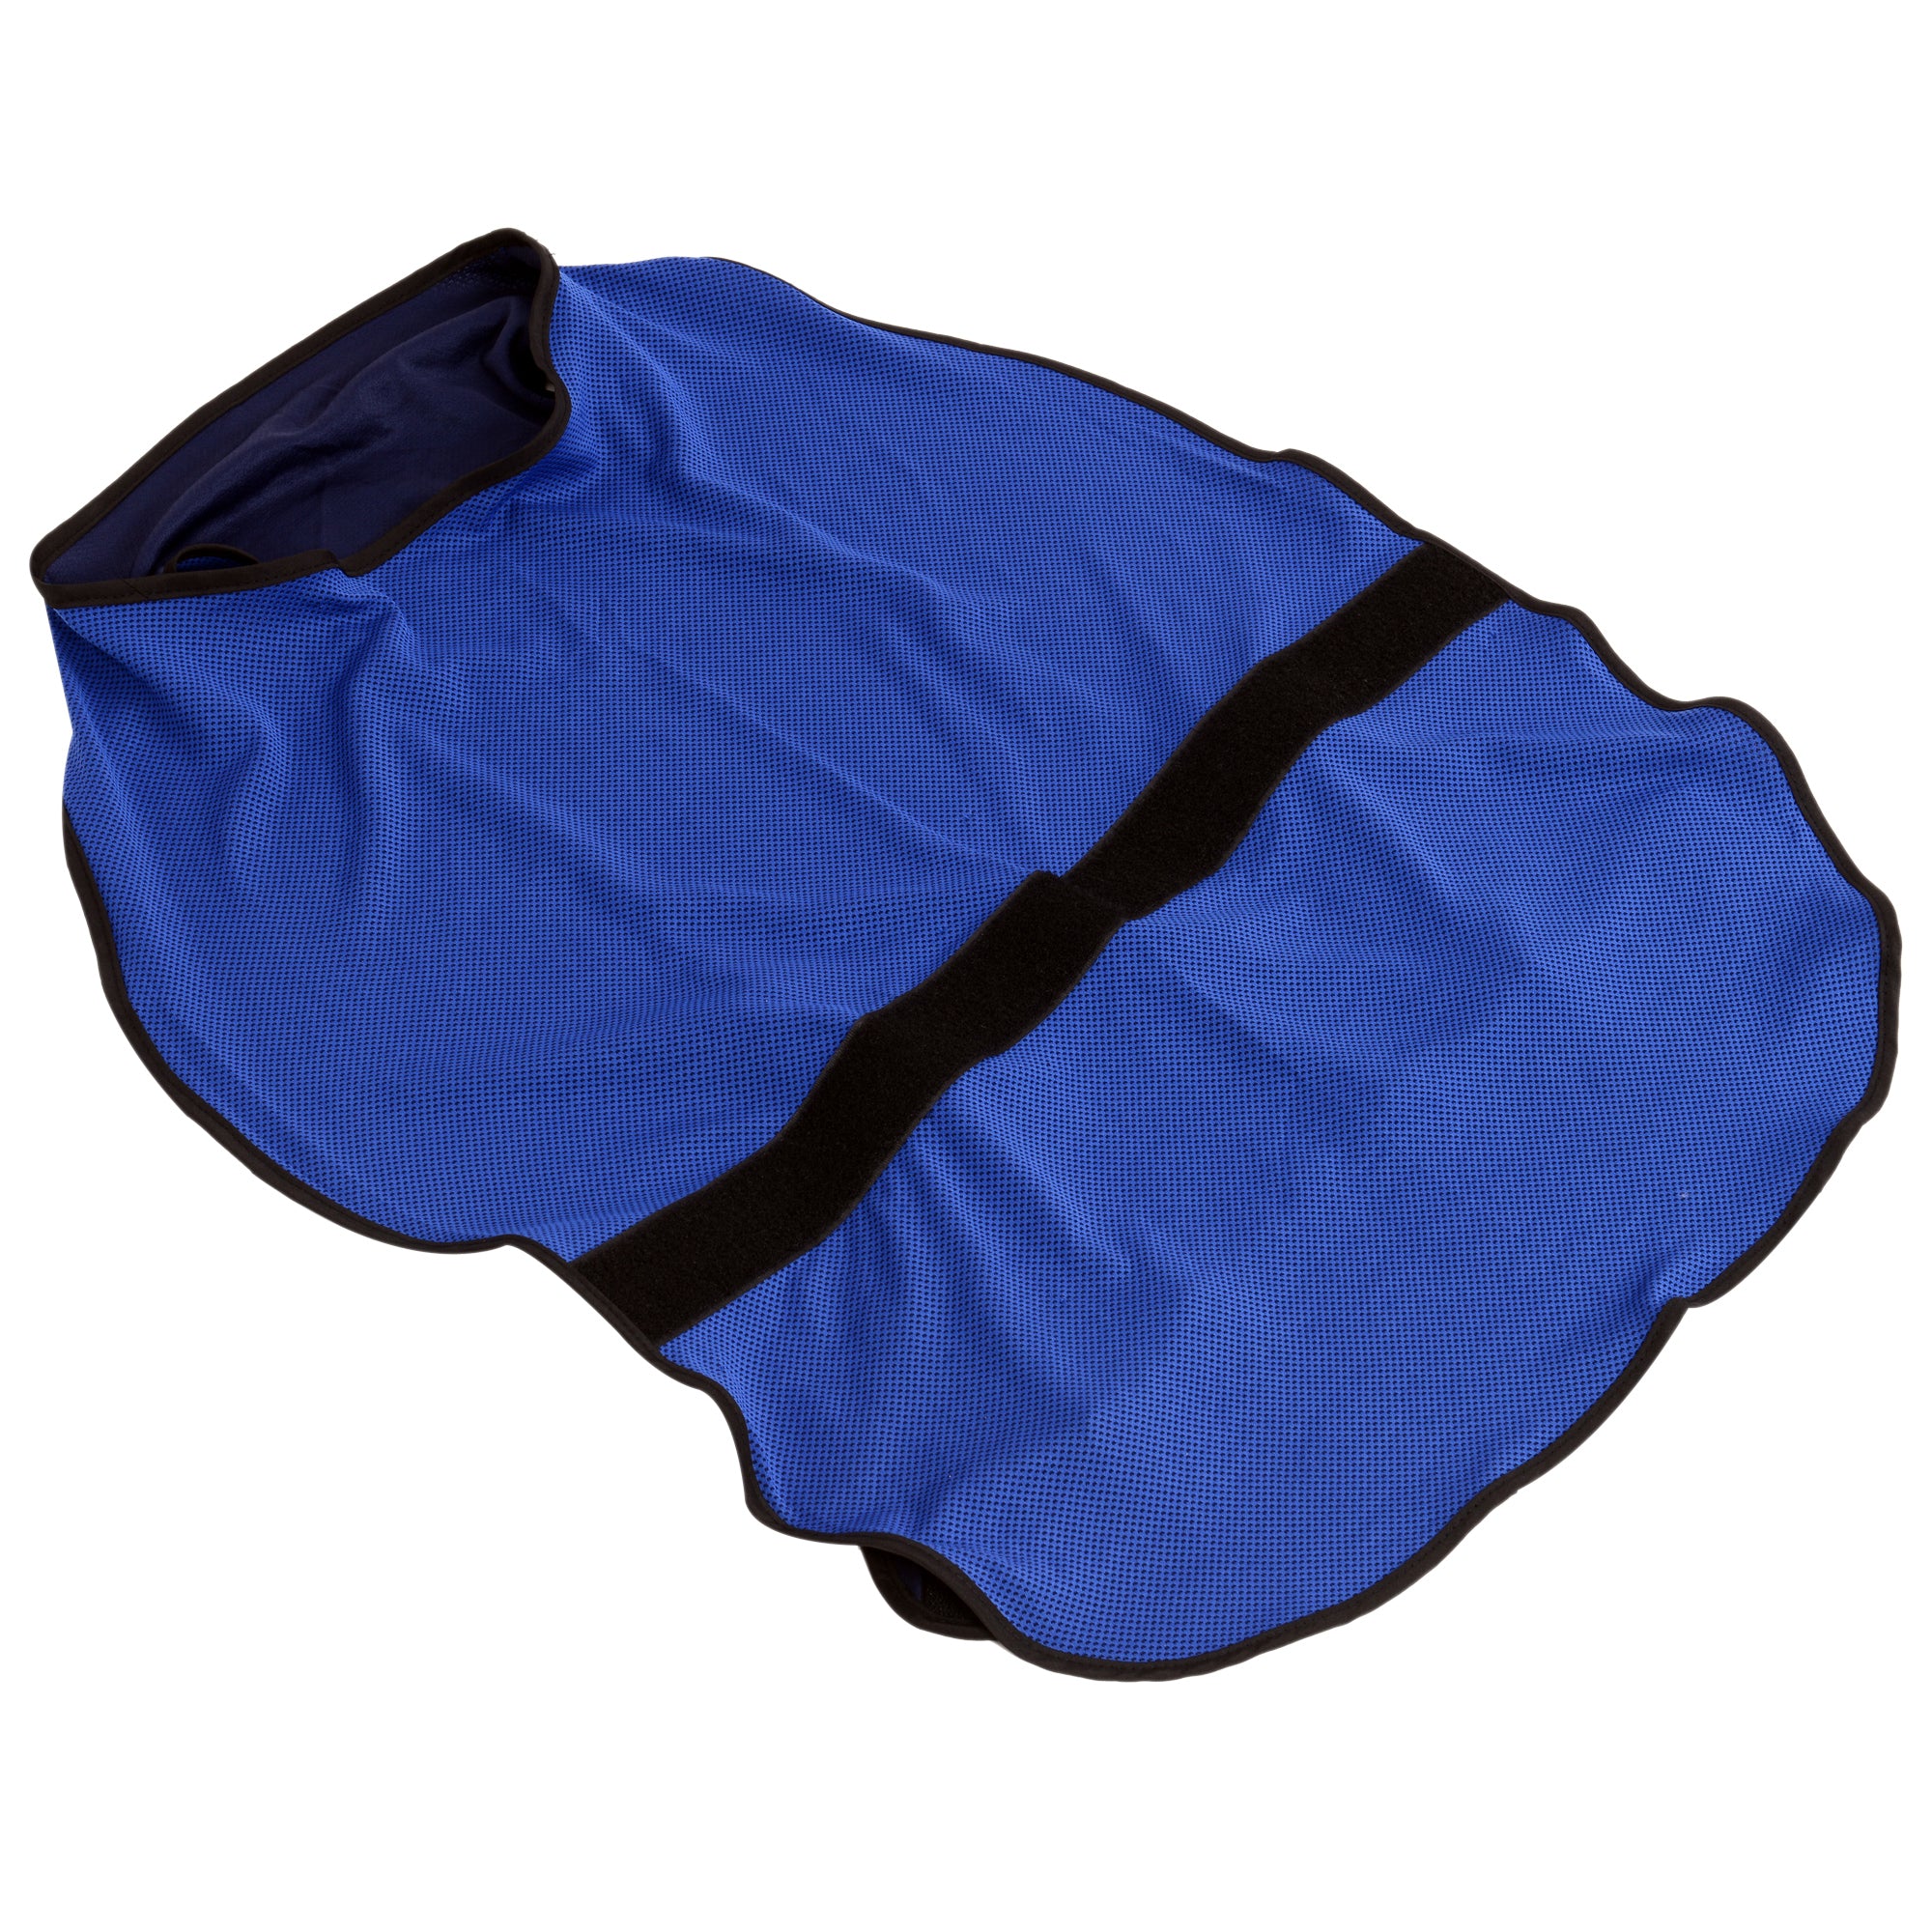 Dog Cooling Coat, Adjustable Size, Back Length 50 cm, Polyester-Blue